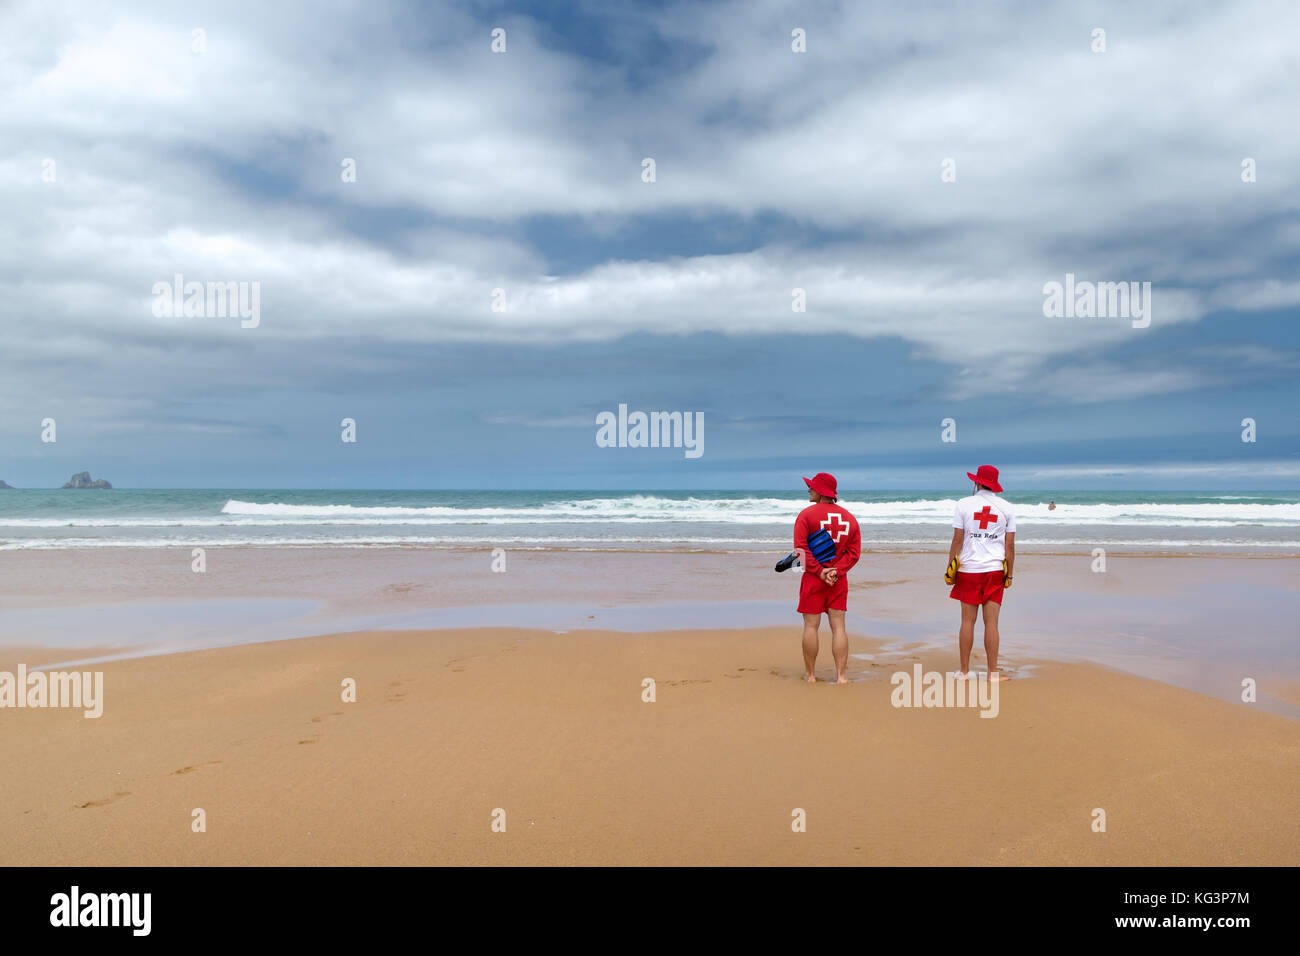 Orinon, Spagna - luglio 6, 2016: due soccorritori sconosciuto sulla deserta spiaggia sabbiosa. soccorritori in rosso-bianco appendiabiti di fronte all'oceano. in onde il sai Foto Stock